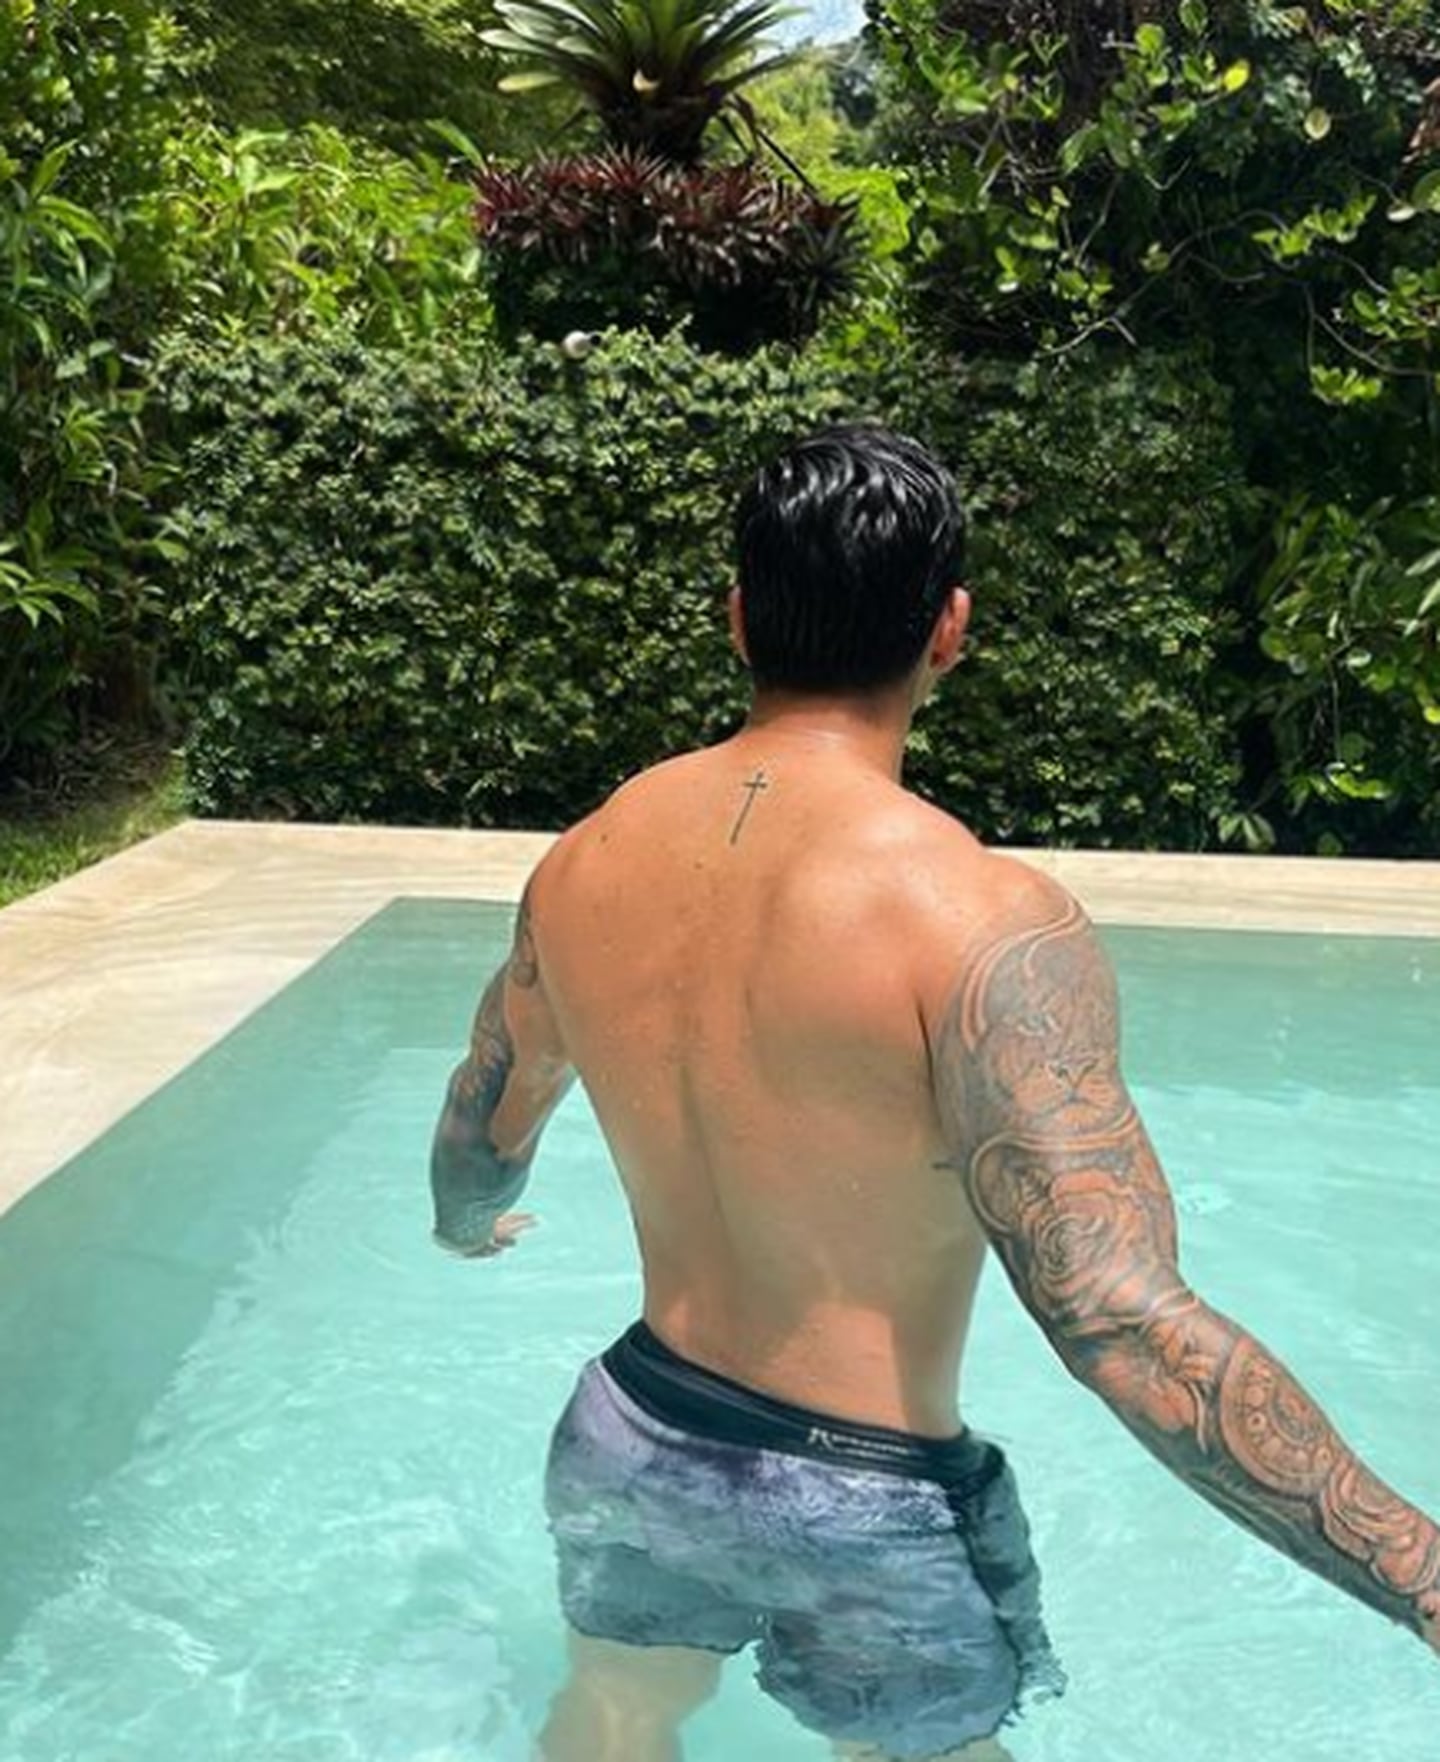 Keyla Sánchez estaría saliendo con Alejandro Sequeira, hijo del exfutbolista Alejandro Sequeira. Instagram